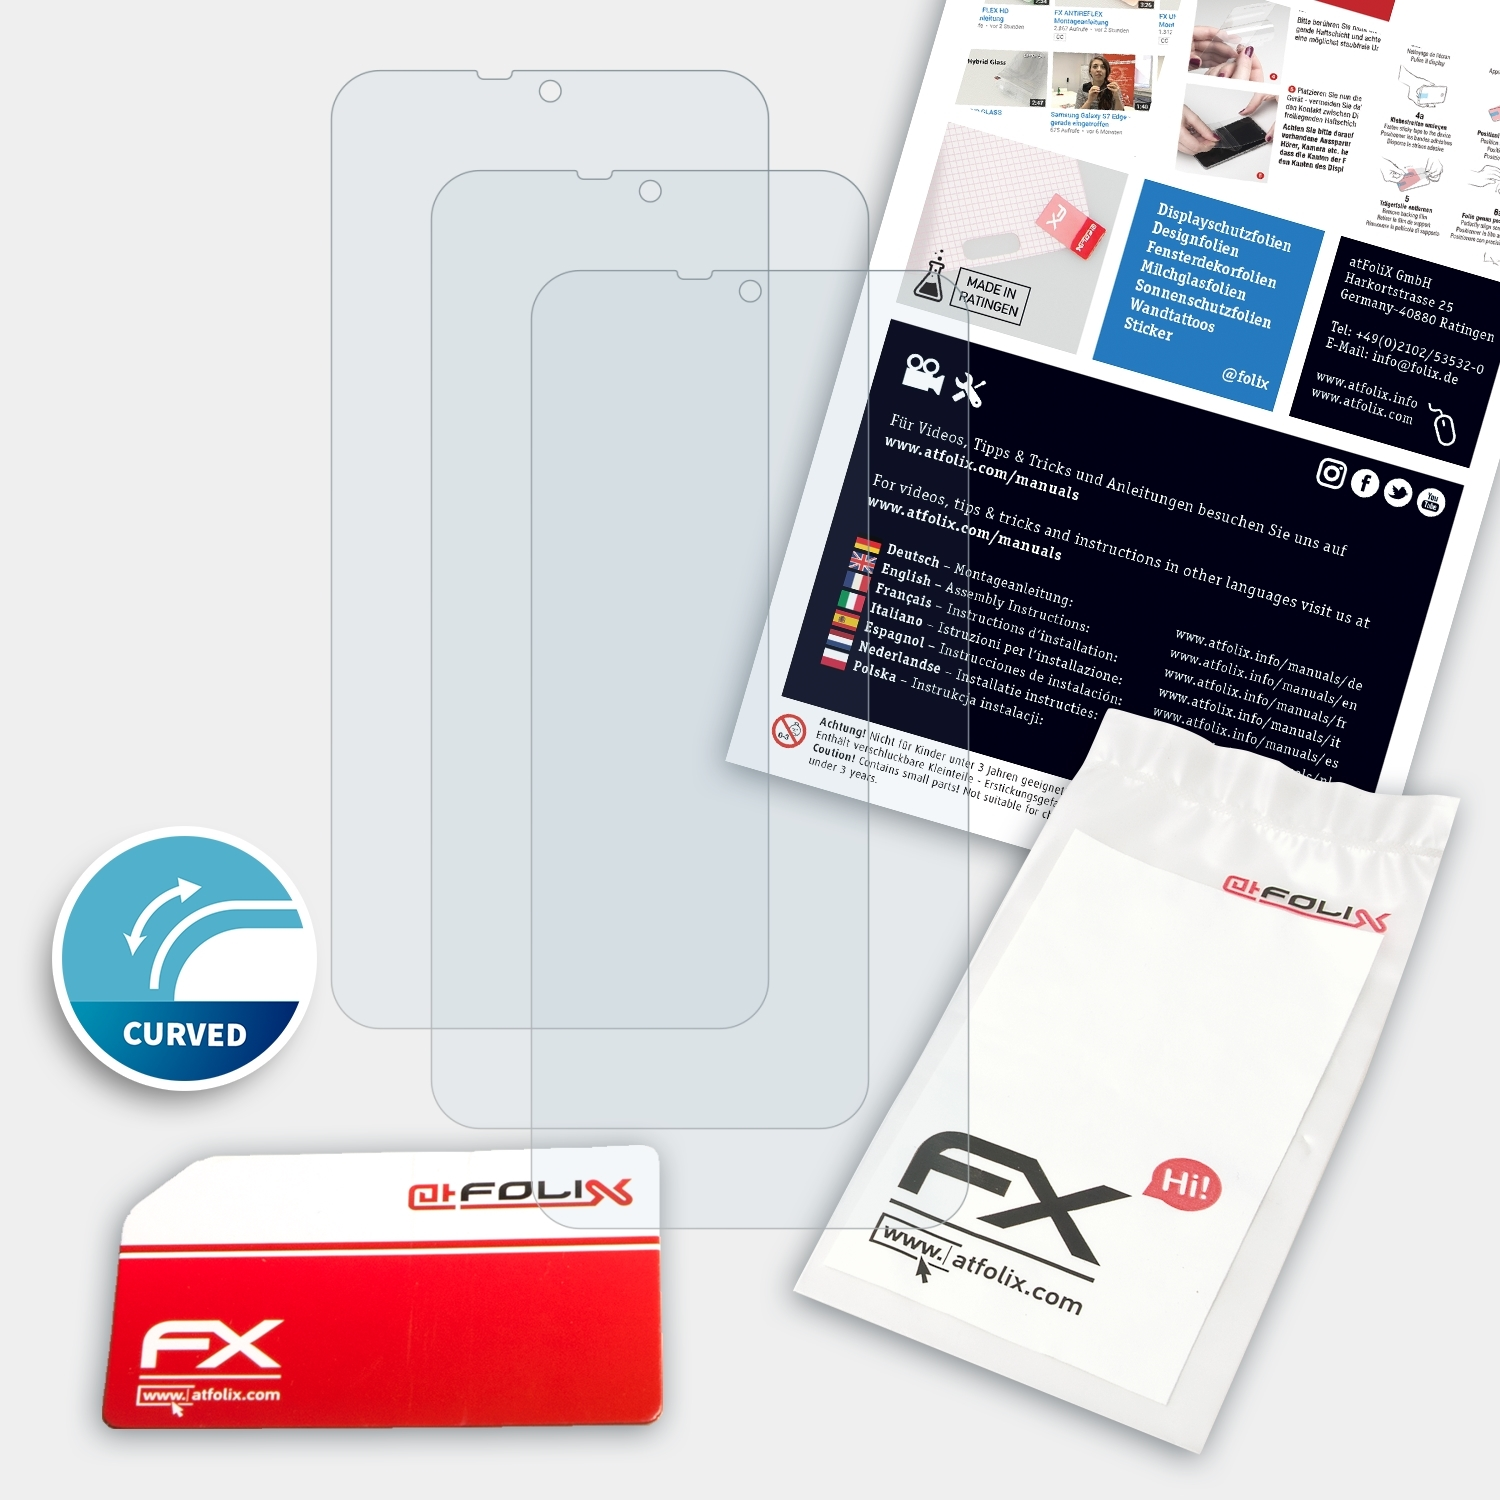 ATFOLIX 3x FX-ActiFleX 6P) Note Displayschutz(für Ulefone